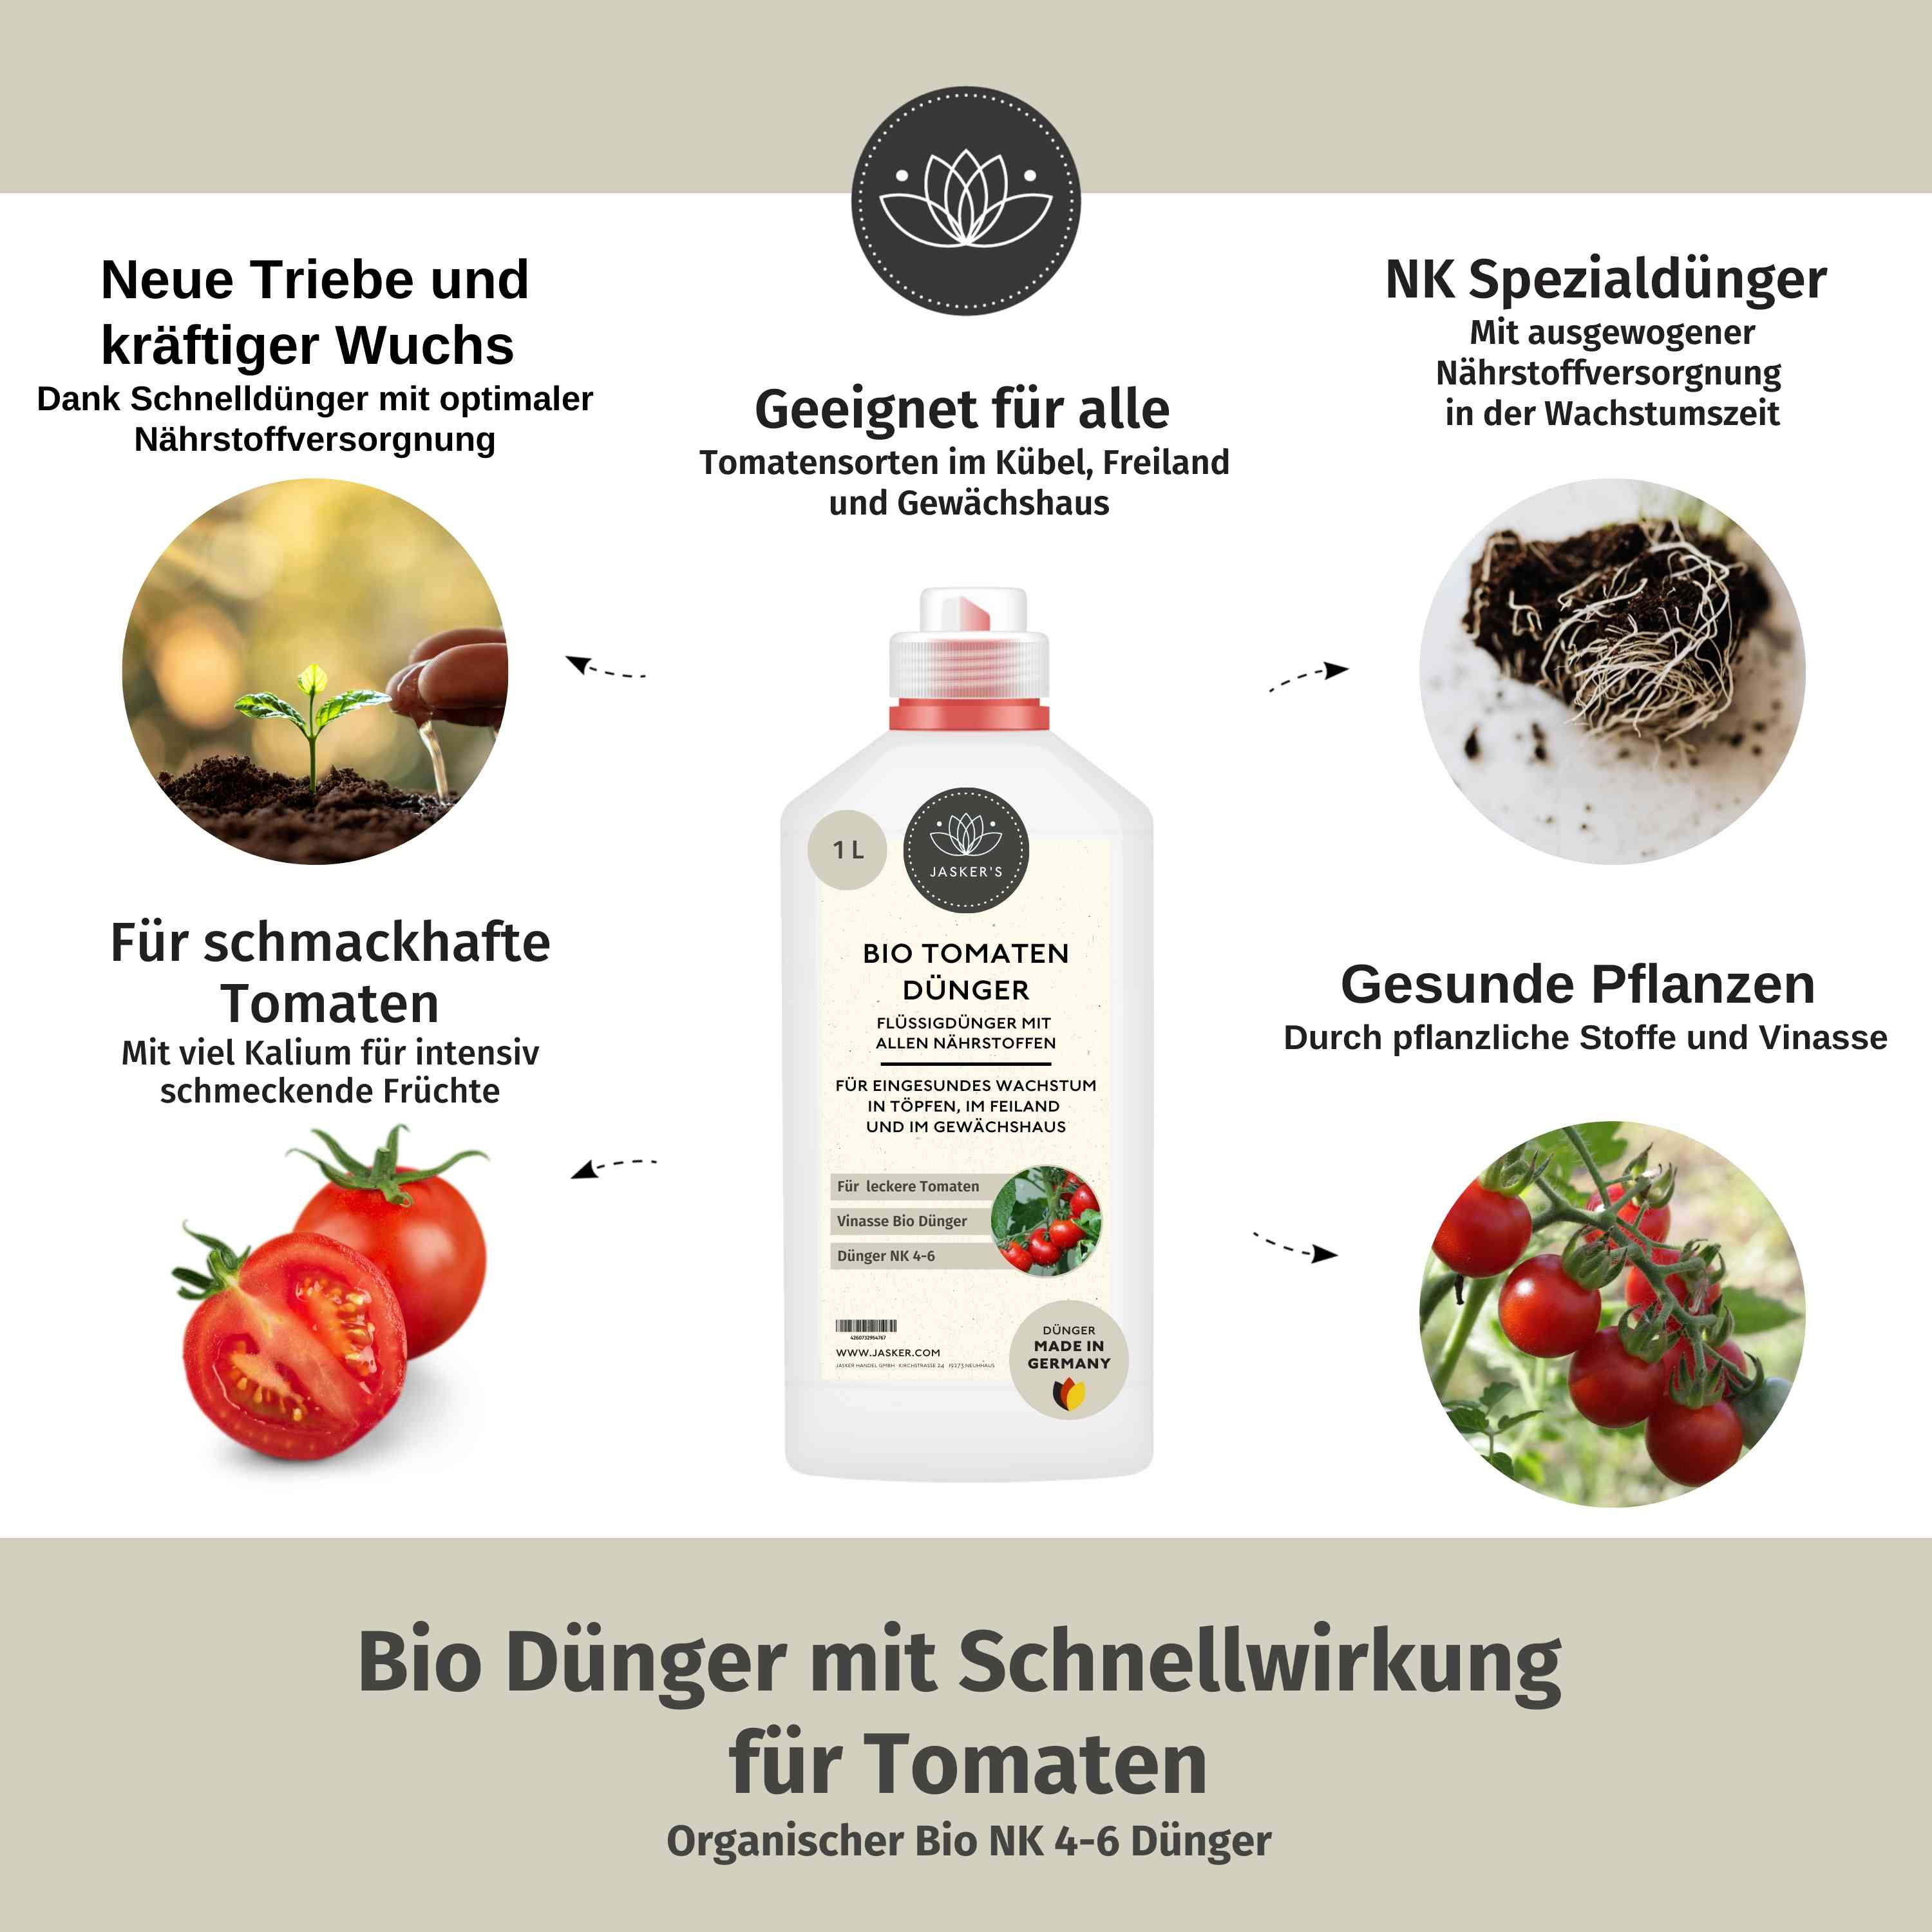 Bio Tomatendünger flüssig 2 Liter (2x1L) - Flüssigdünger für Tomaten